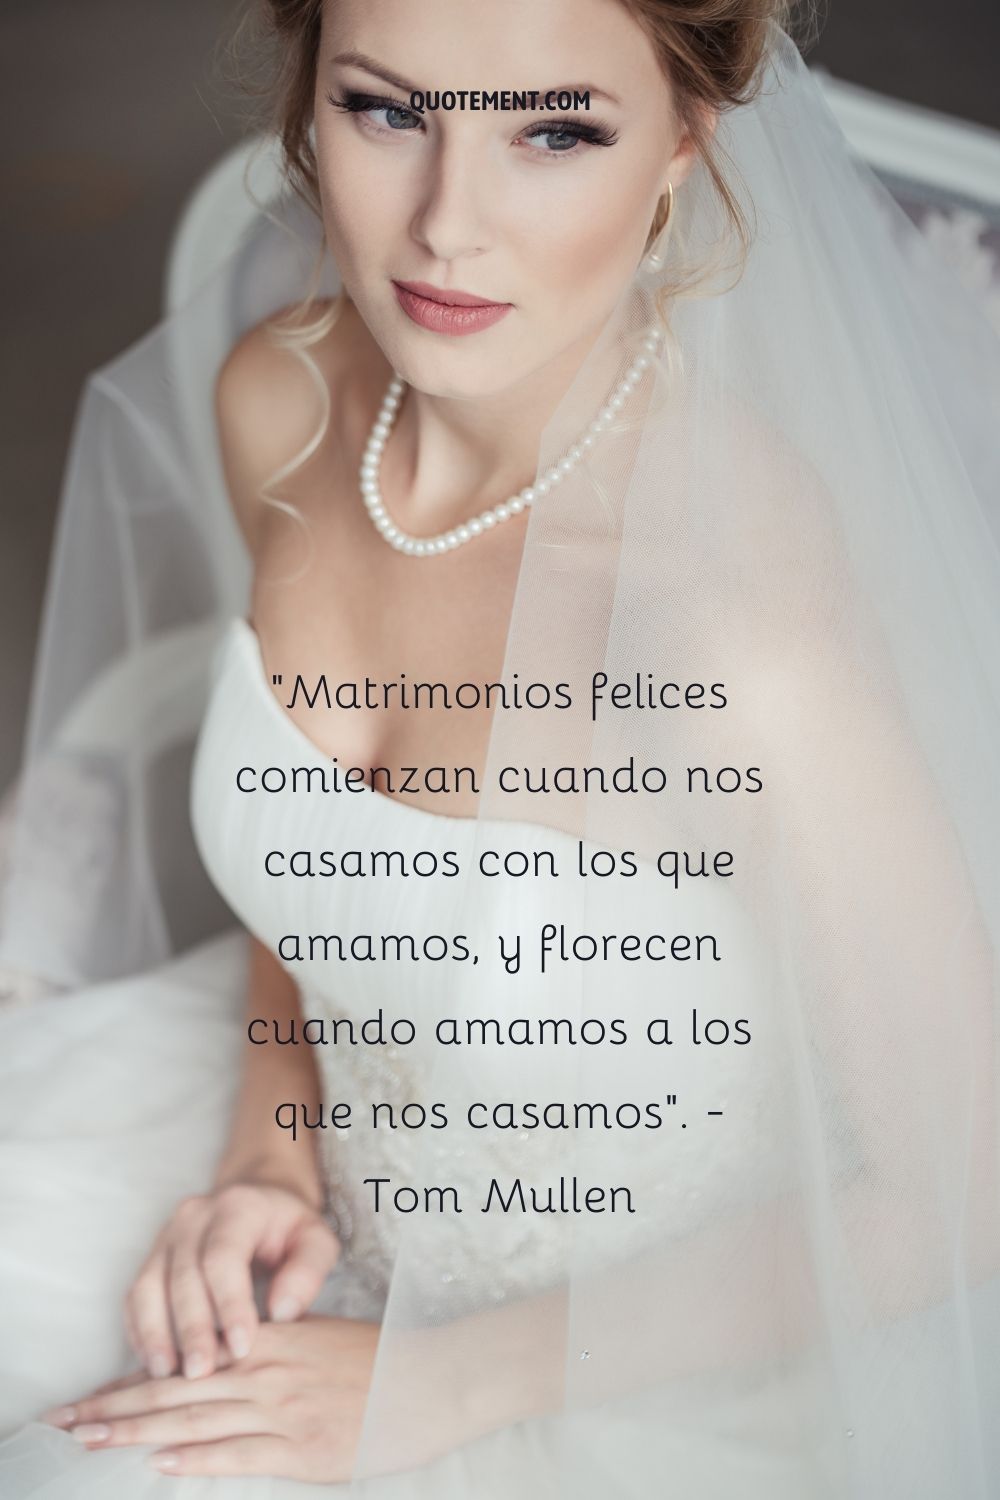 Los matrimonios felices empiezan cuando nos casamos con quienes amamos, y florecen cuando amamos a quienes nos casamos. - Tom Mullen